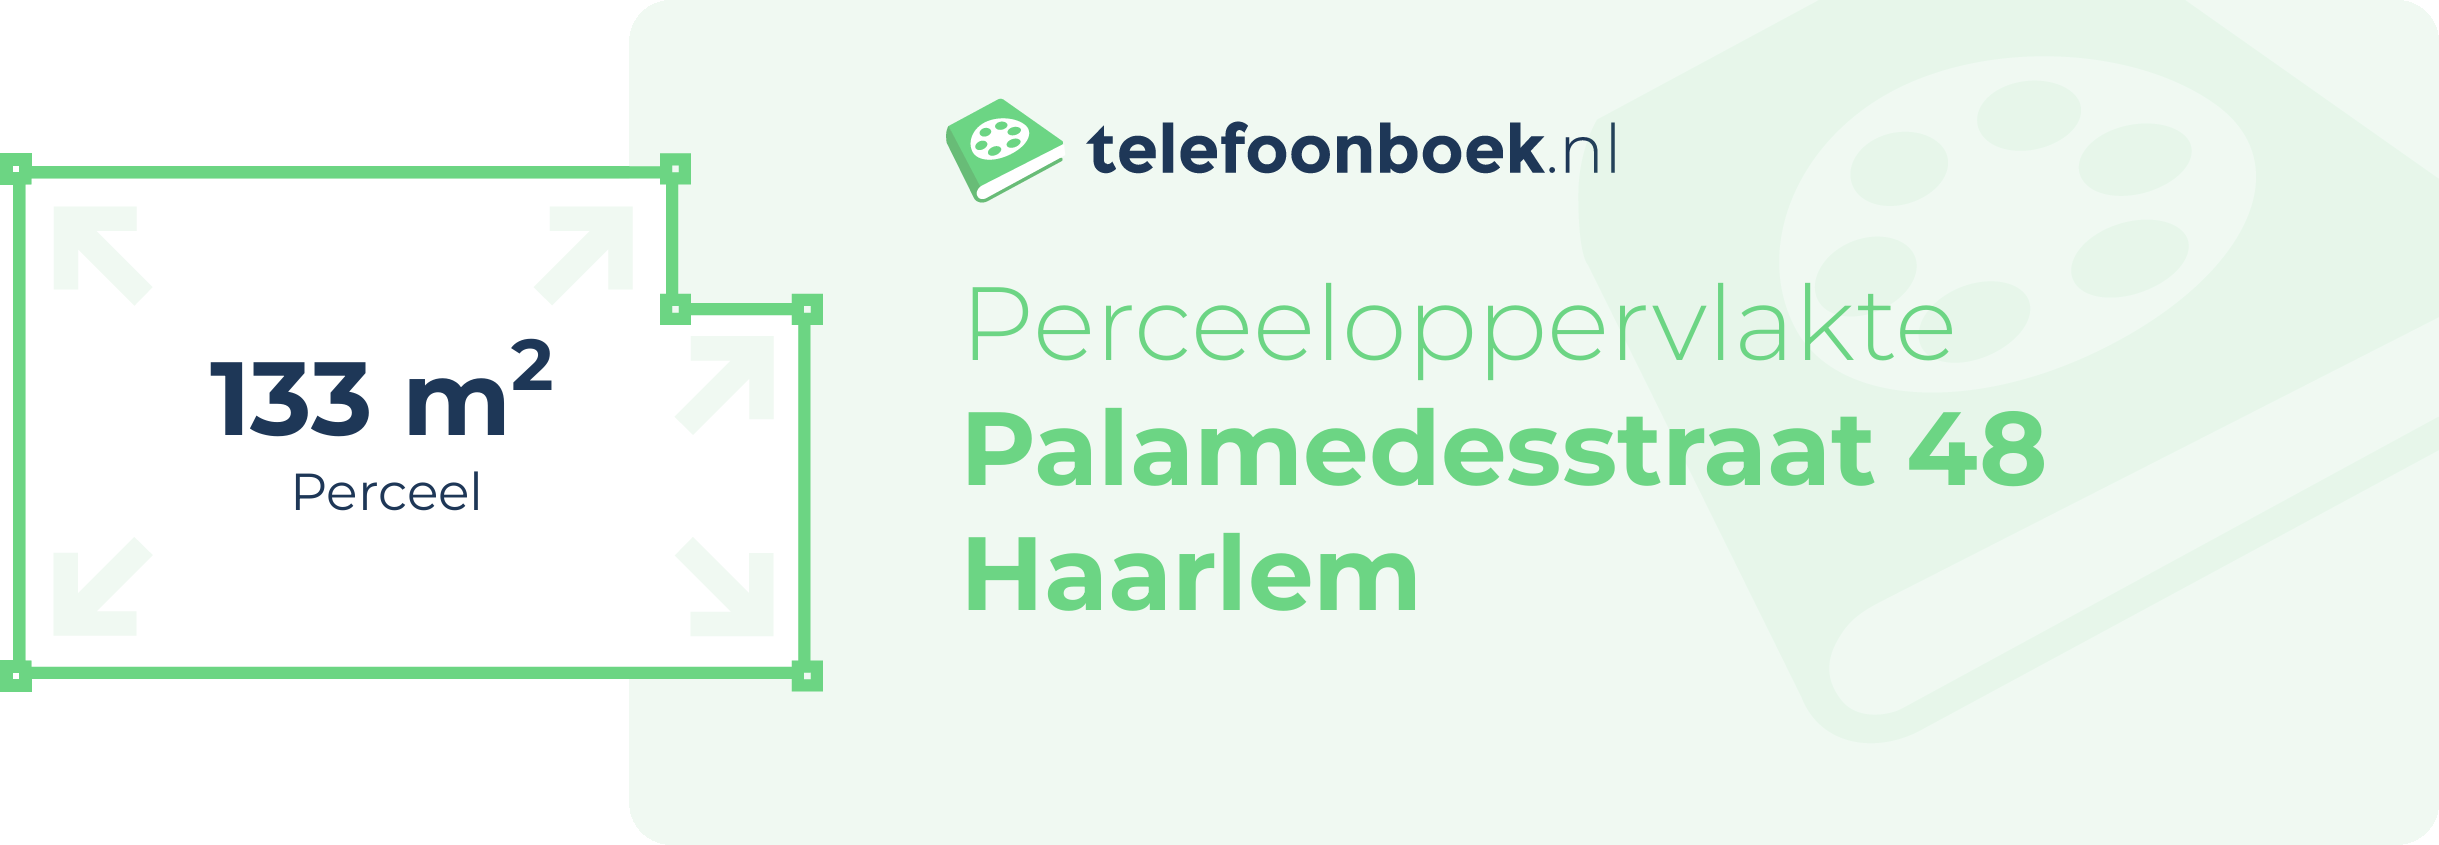 Perceeloppervlakte Palamedesstraat 48 Haarlem